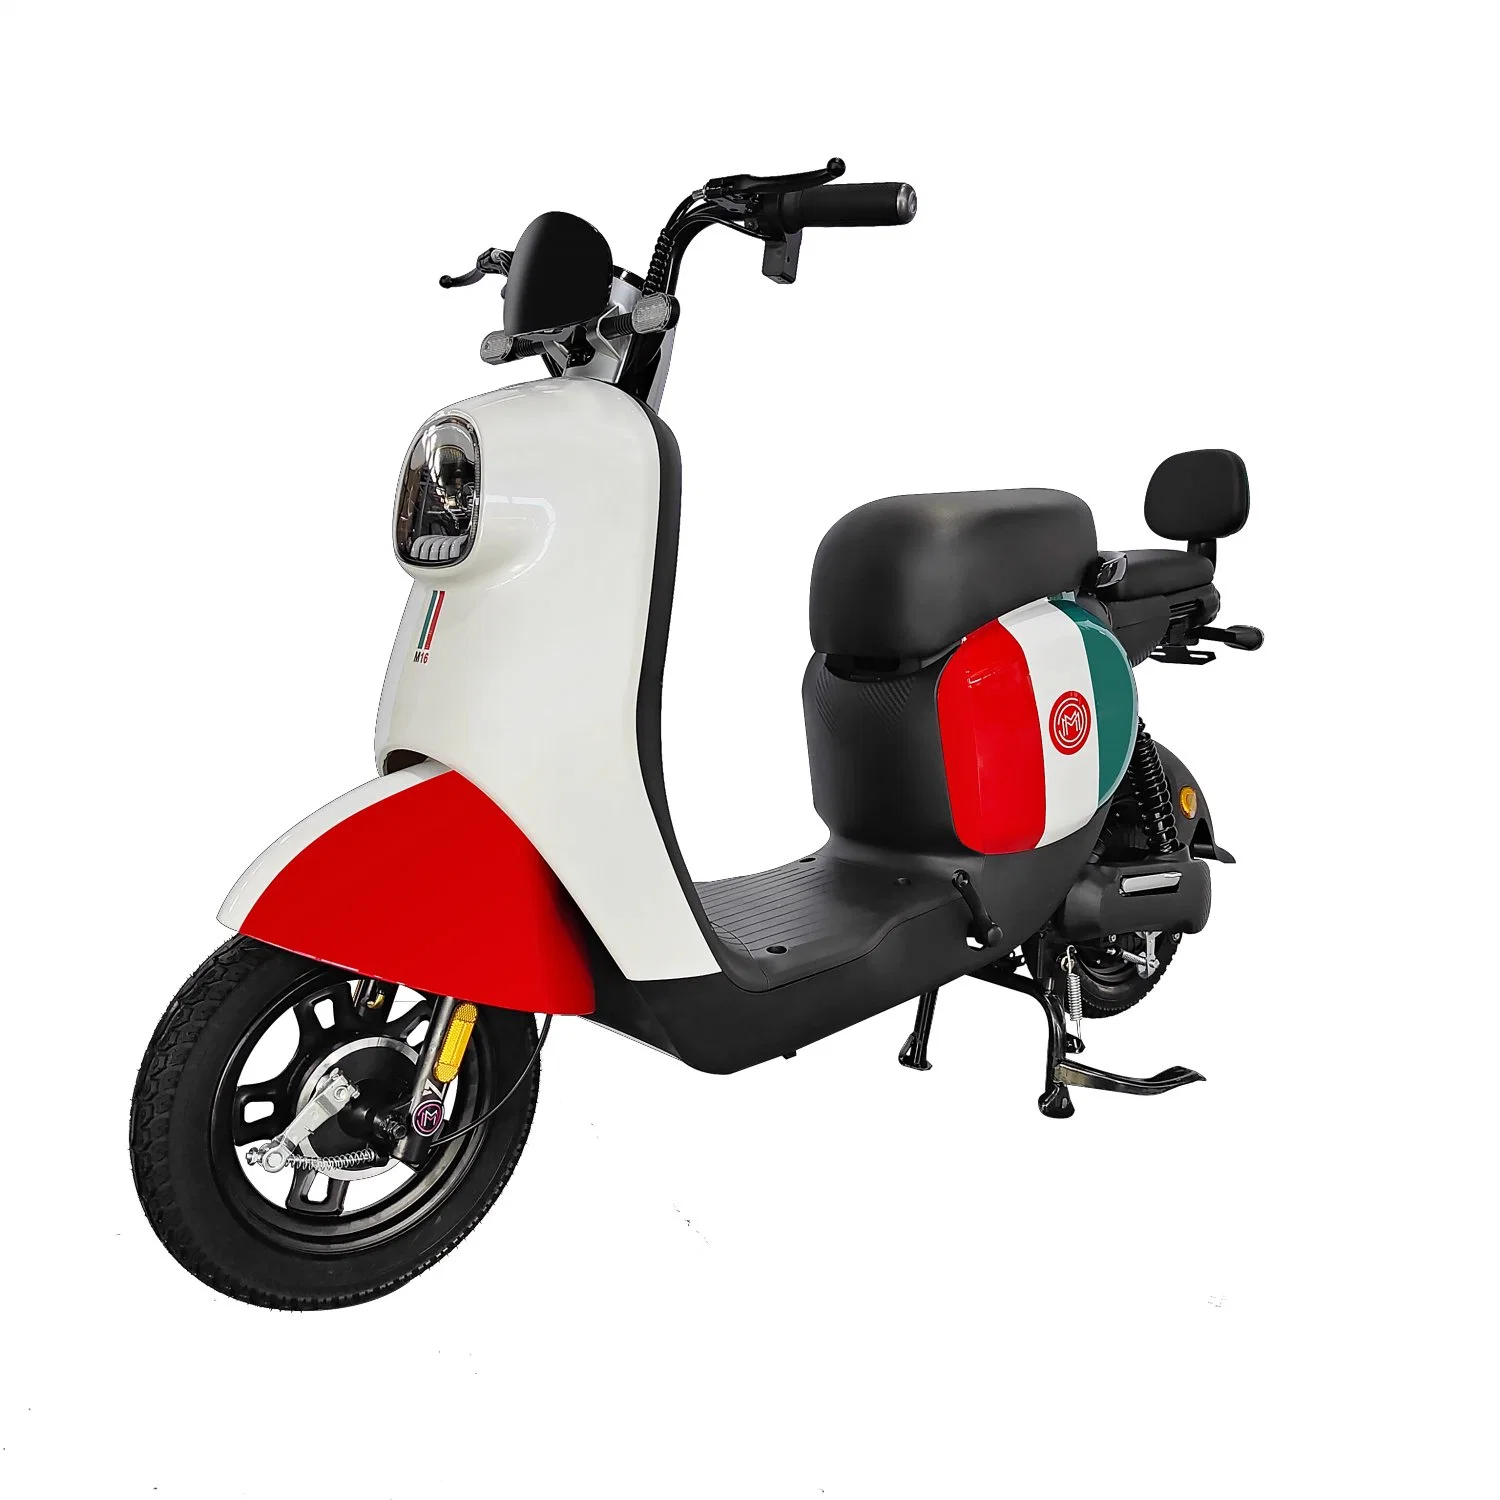 Willstar Ty258 Haute Puissance Moped Électrique/Vélo Électrique avec Batterie au Plomb Chilwee 48V20ah